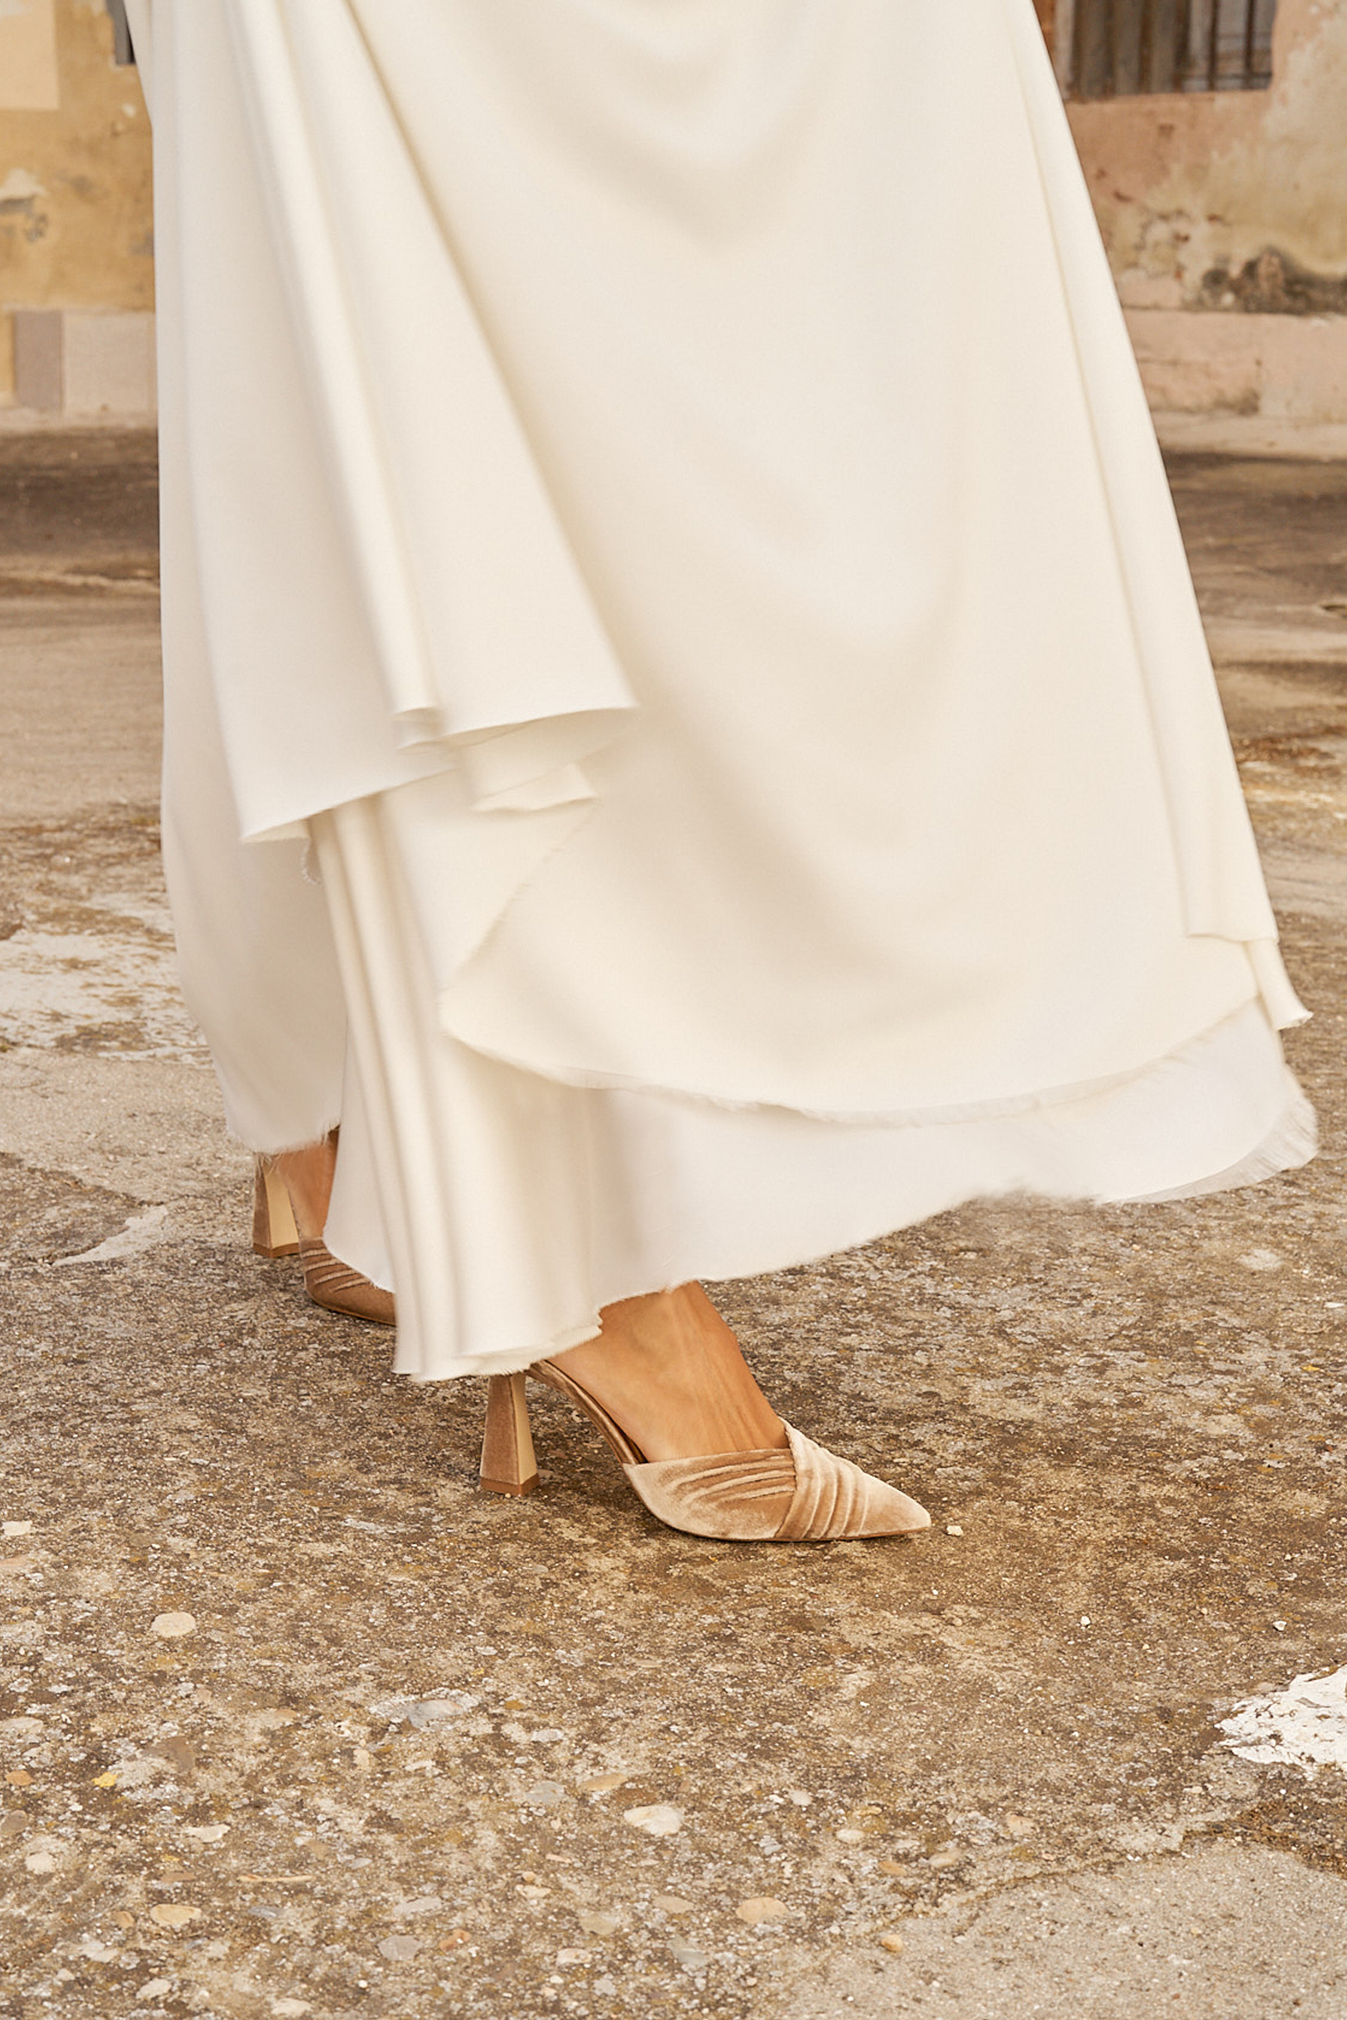 Vista cercana de los pies de novia calzando zapatos Modelo Tilda color avellana de Flordeasoka, detalle de elegancia y sofisticación.